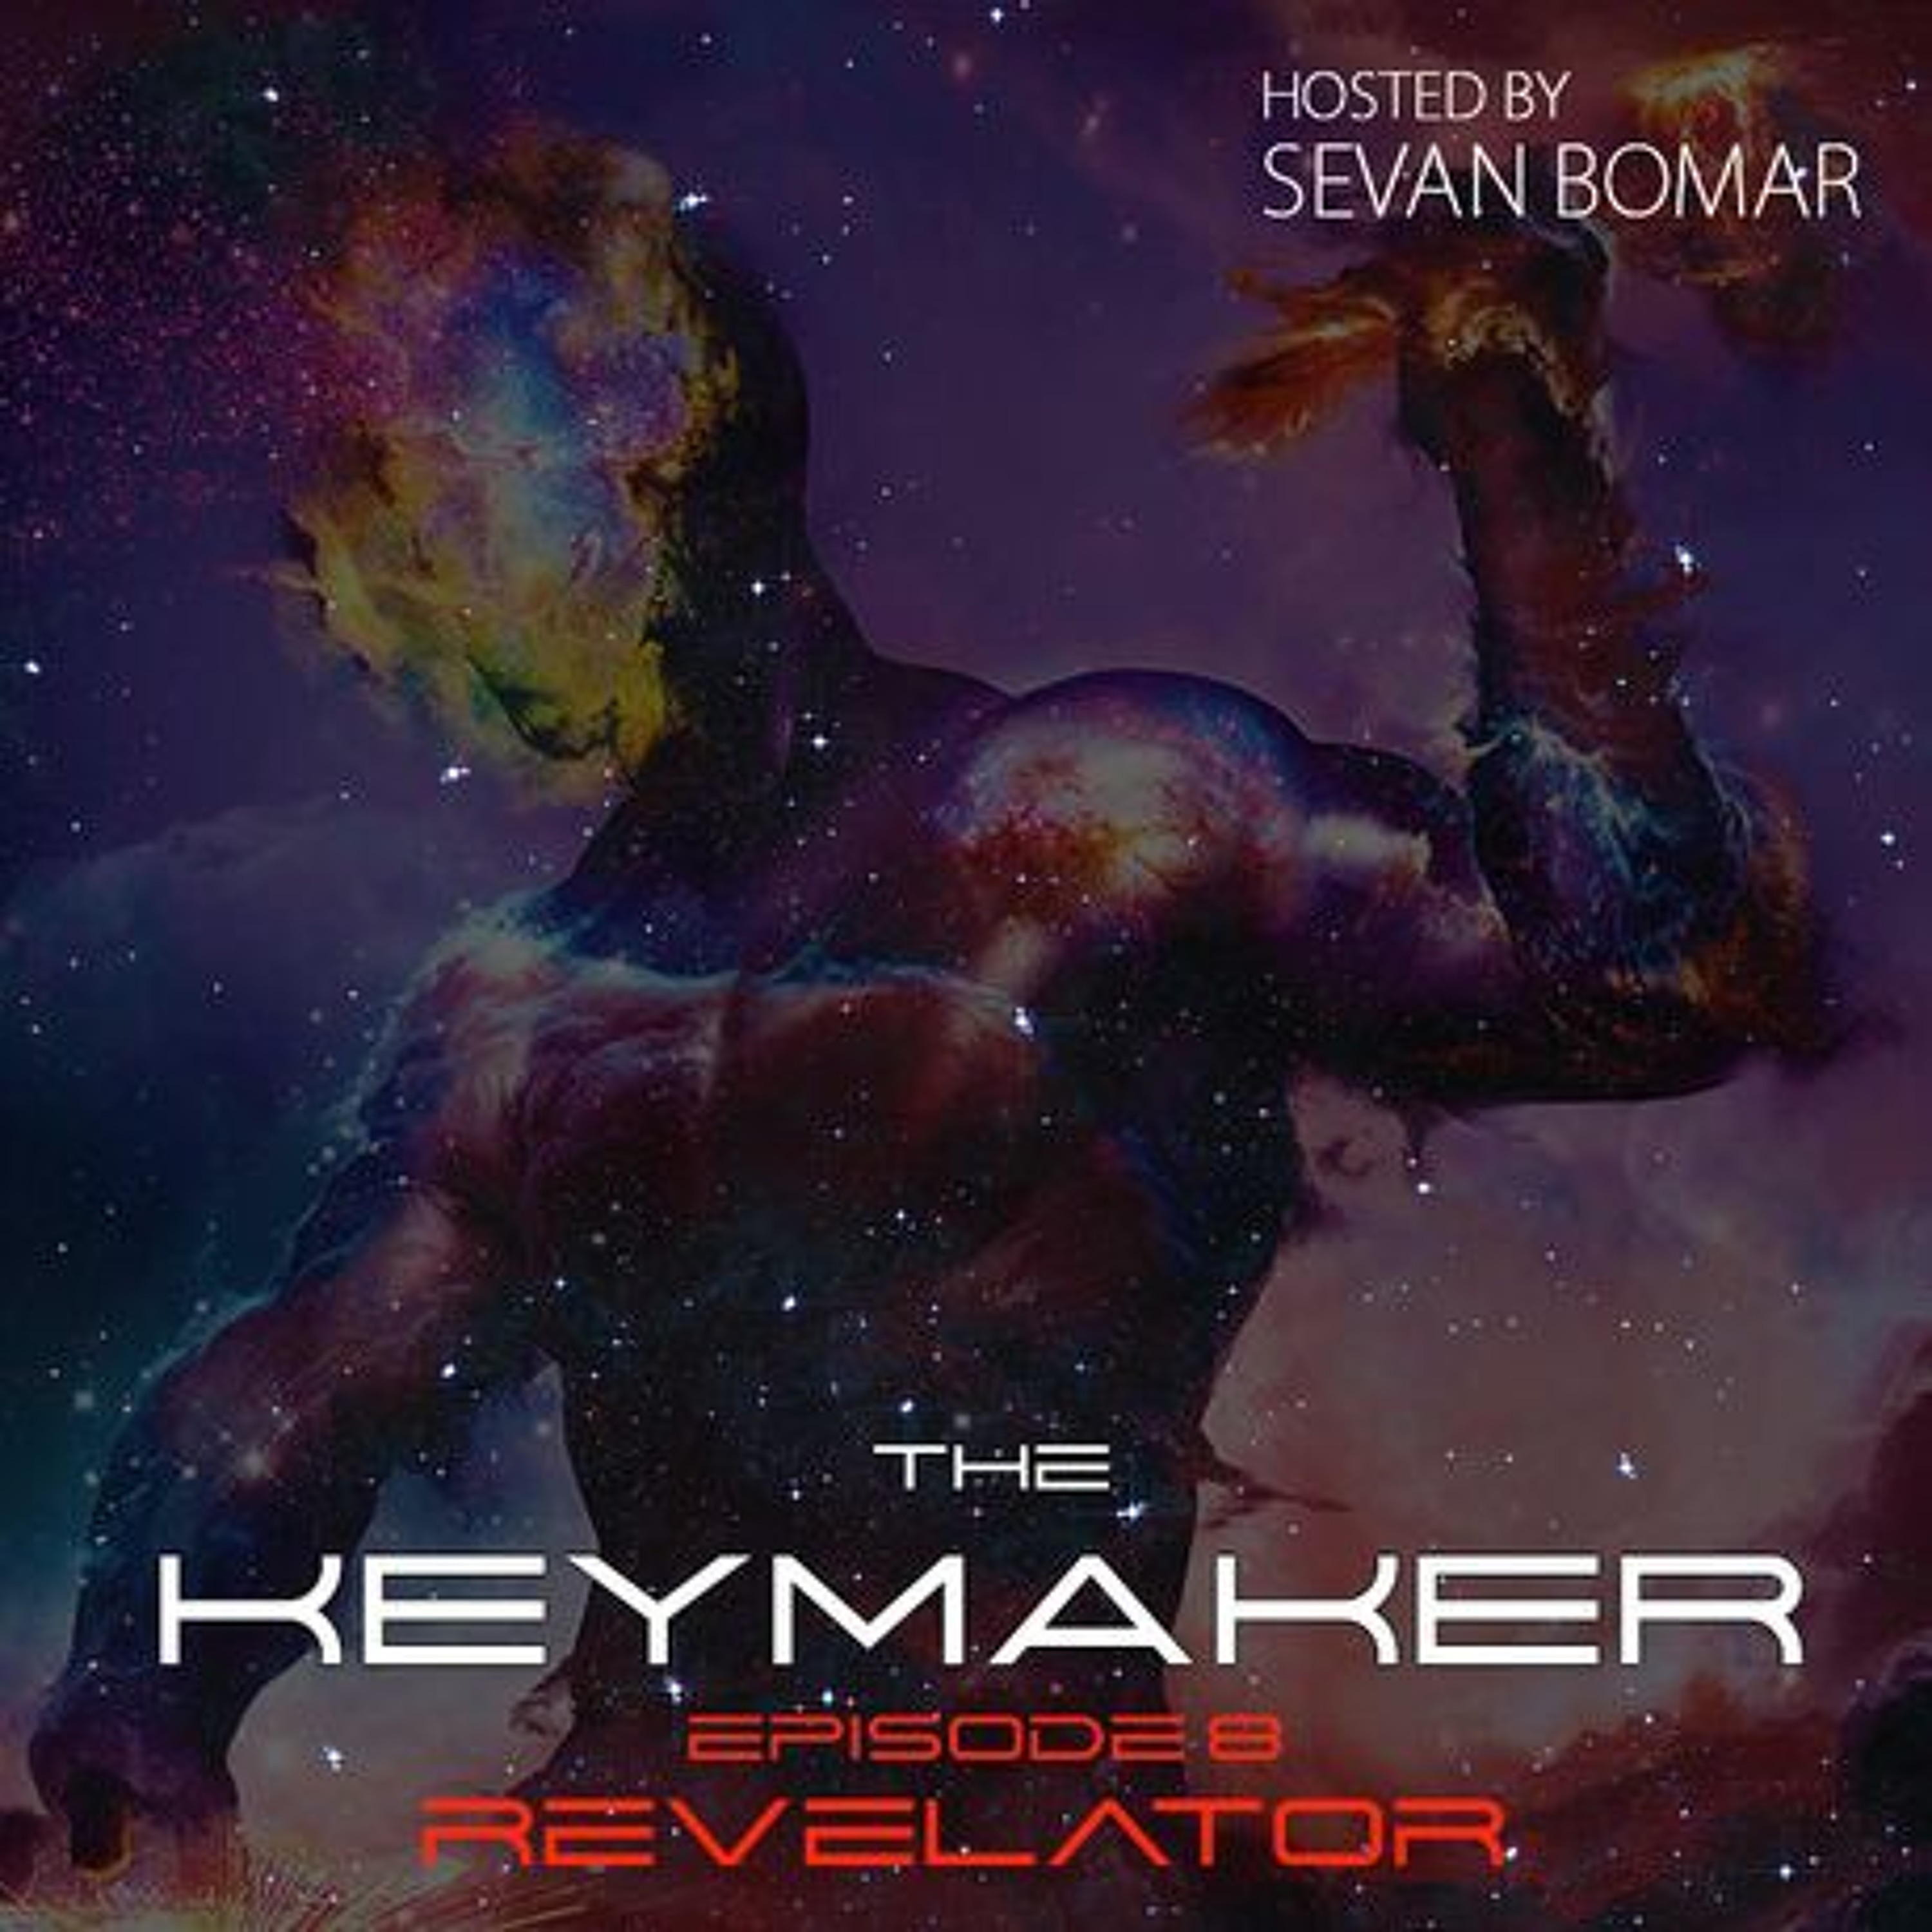 SEVAN BOMAR - THE KEYMAKER, EPISODE 8 - REVELATOR - DEC 26 2015